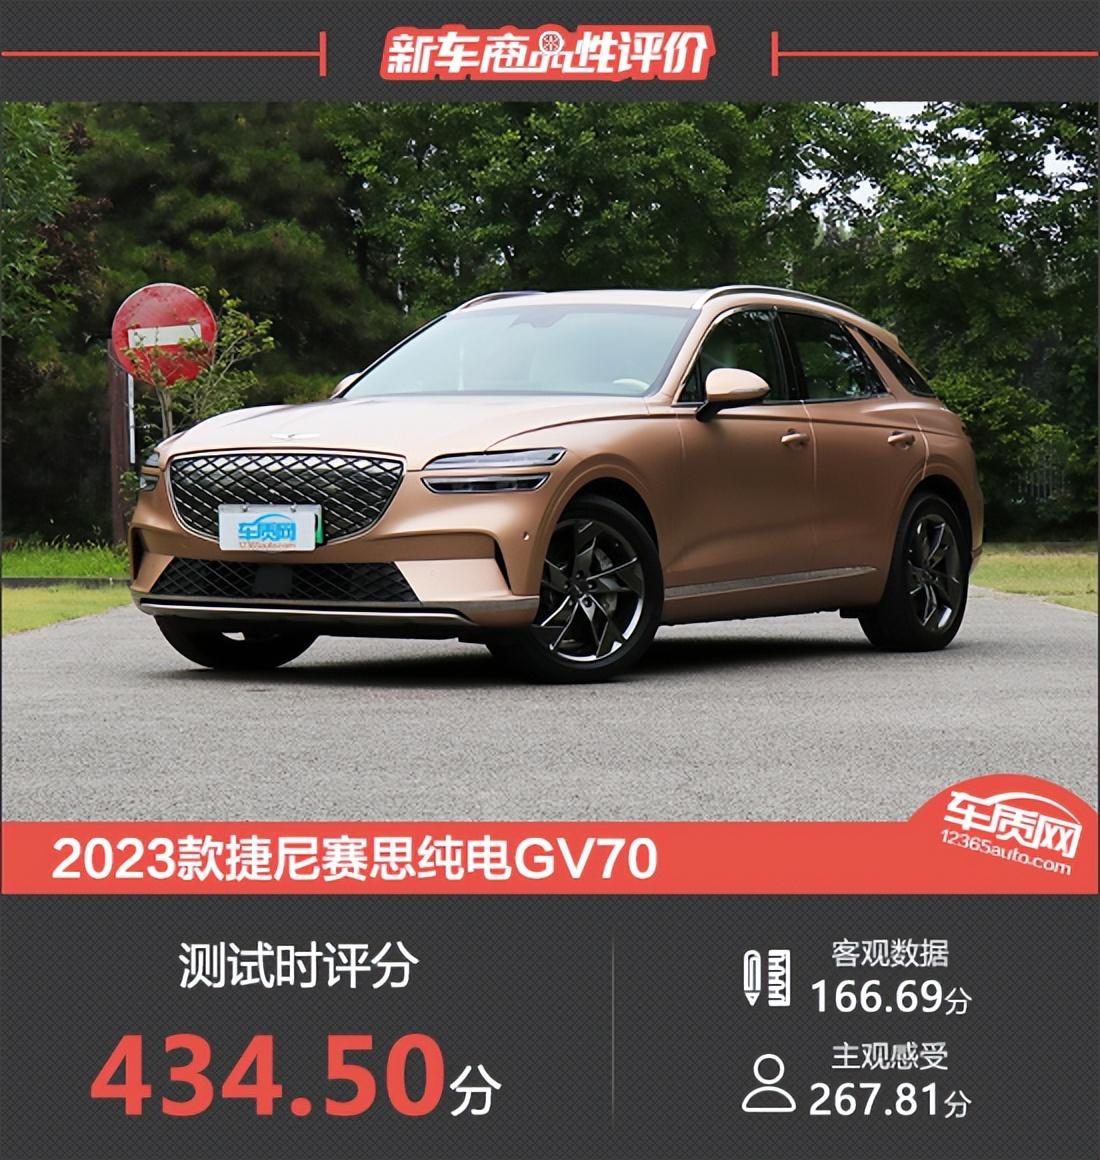 2023款捷尼赛思纯电GV70新车商品性评价